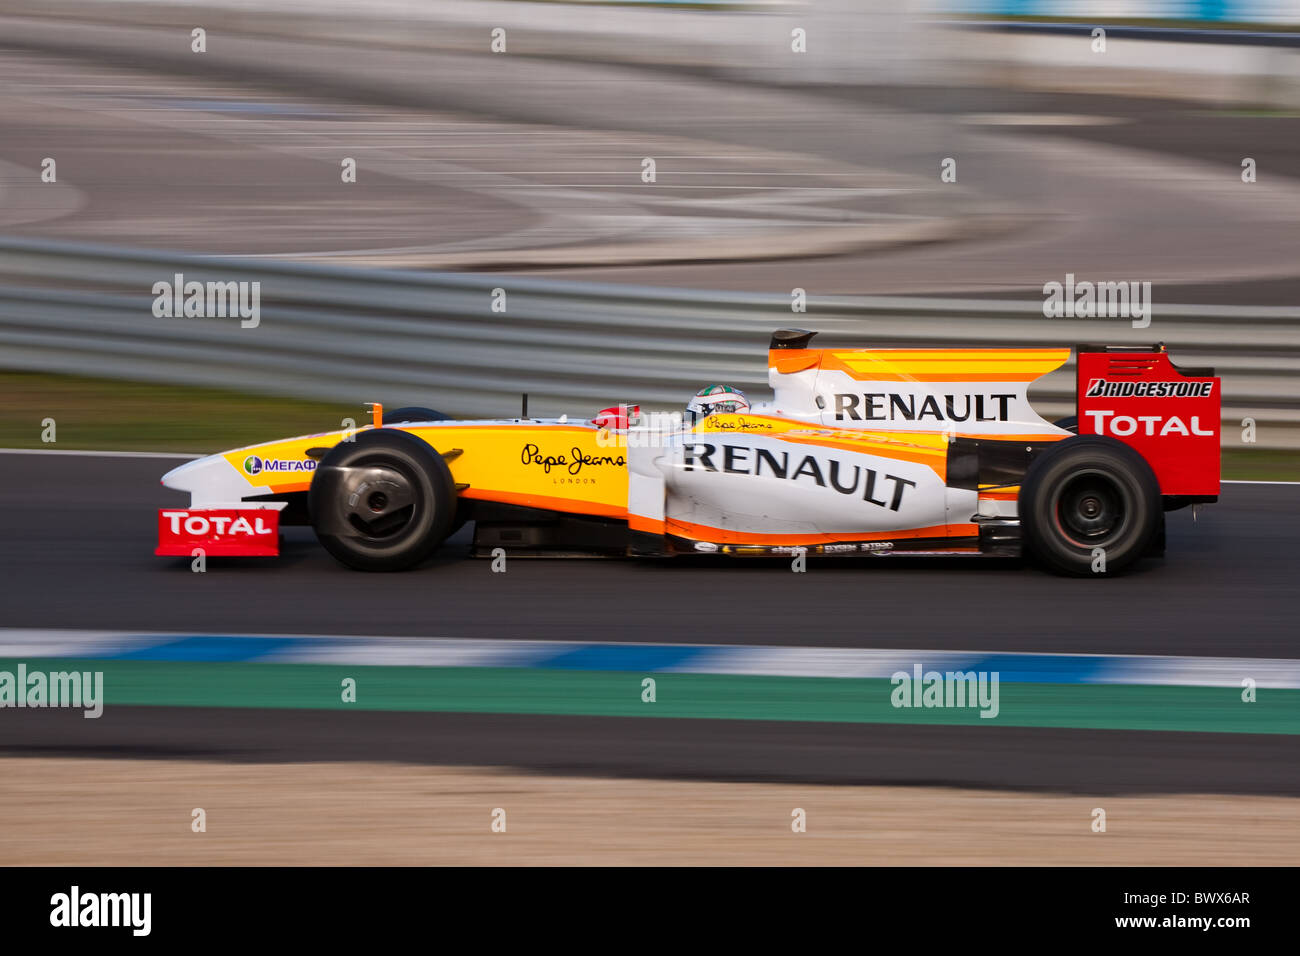 2009 Februar-Formel-1-Jerez-Formel-1 Rennsport Schaltung Lebenszeiten schwenken RENAULT F1 Test Auto Automobil verwischen motorsport Stockfoto